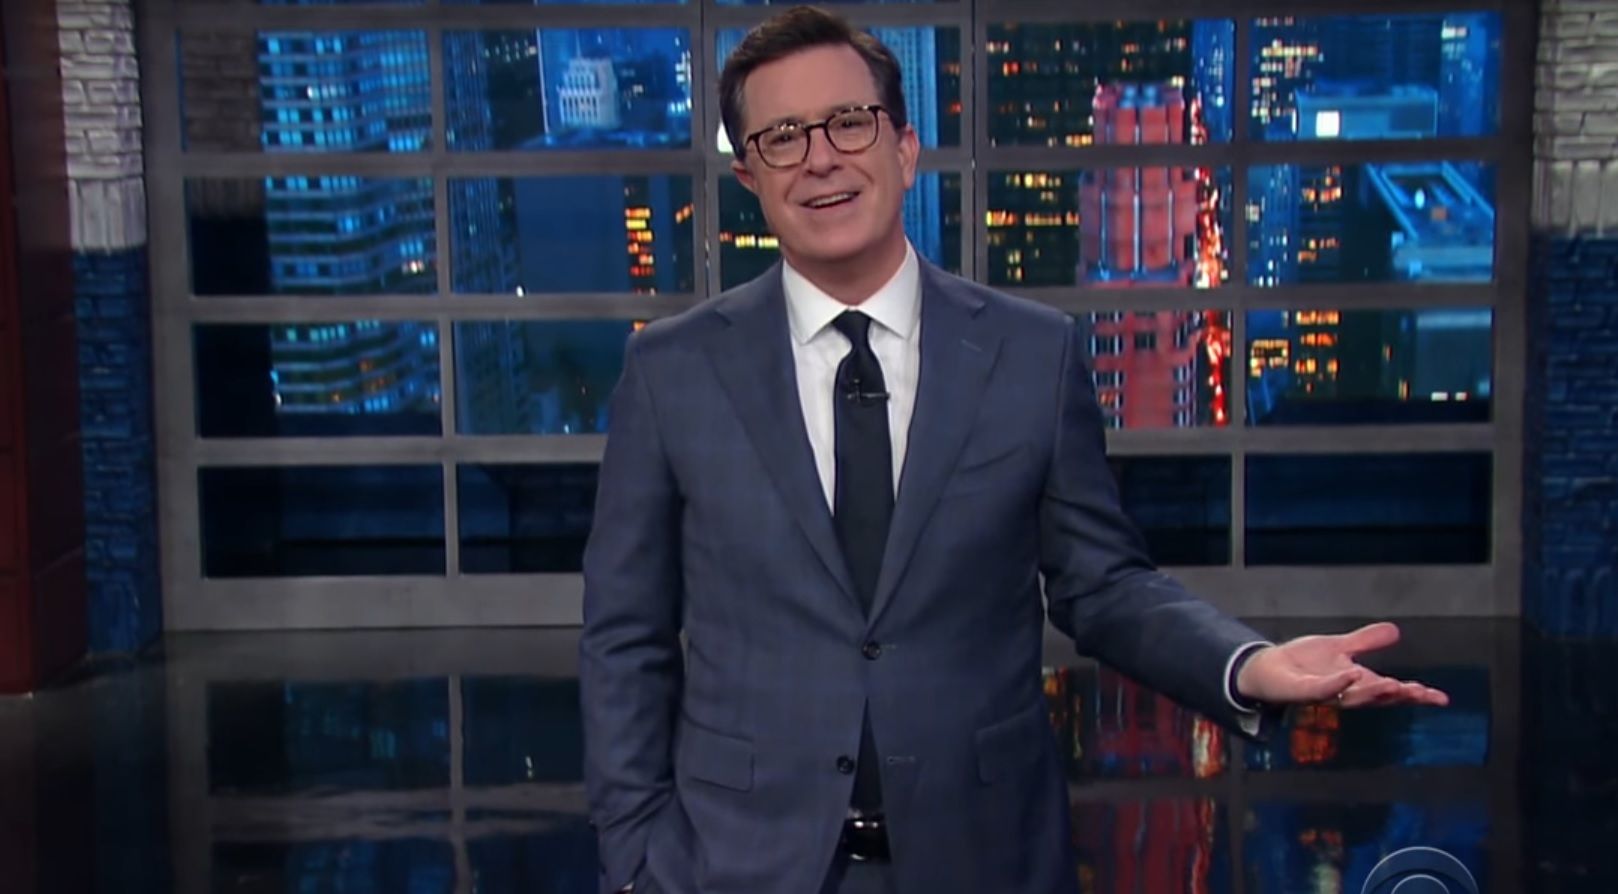 Stephen Colbert on Spicer firing rumors